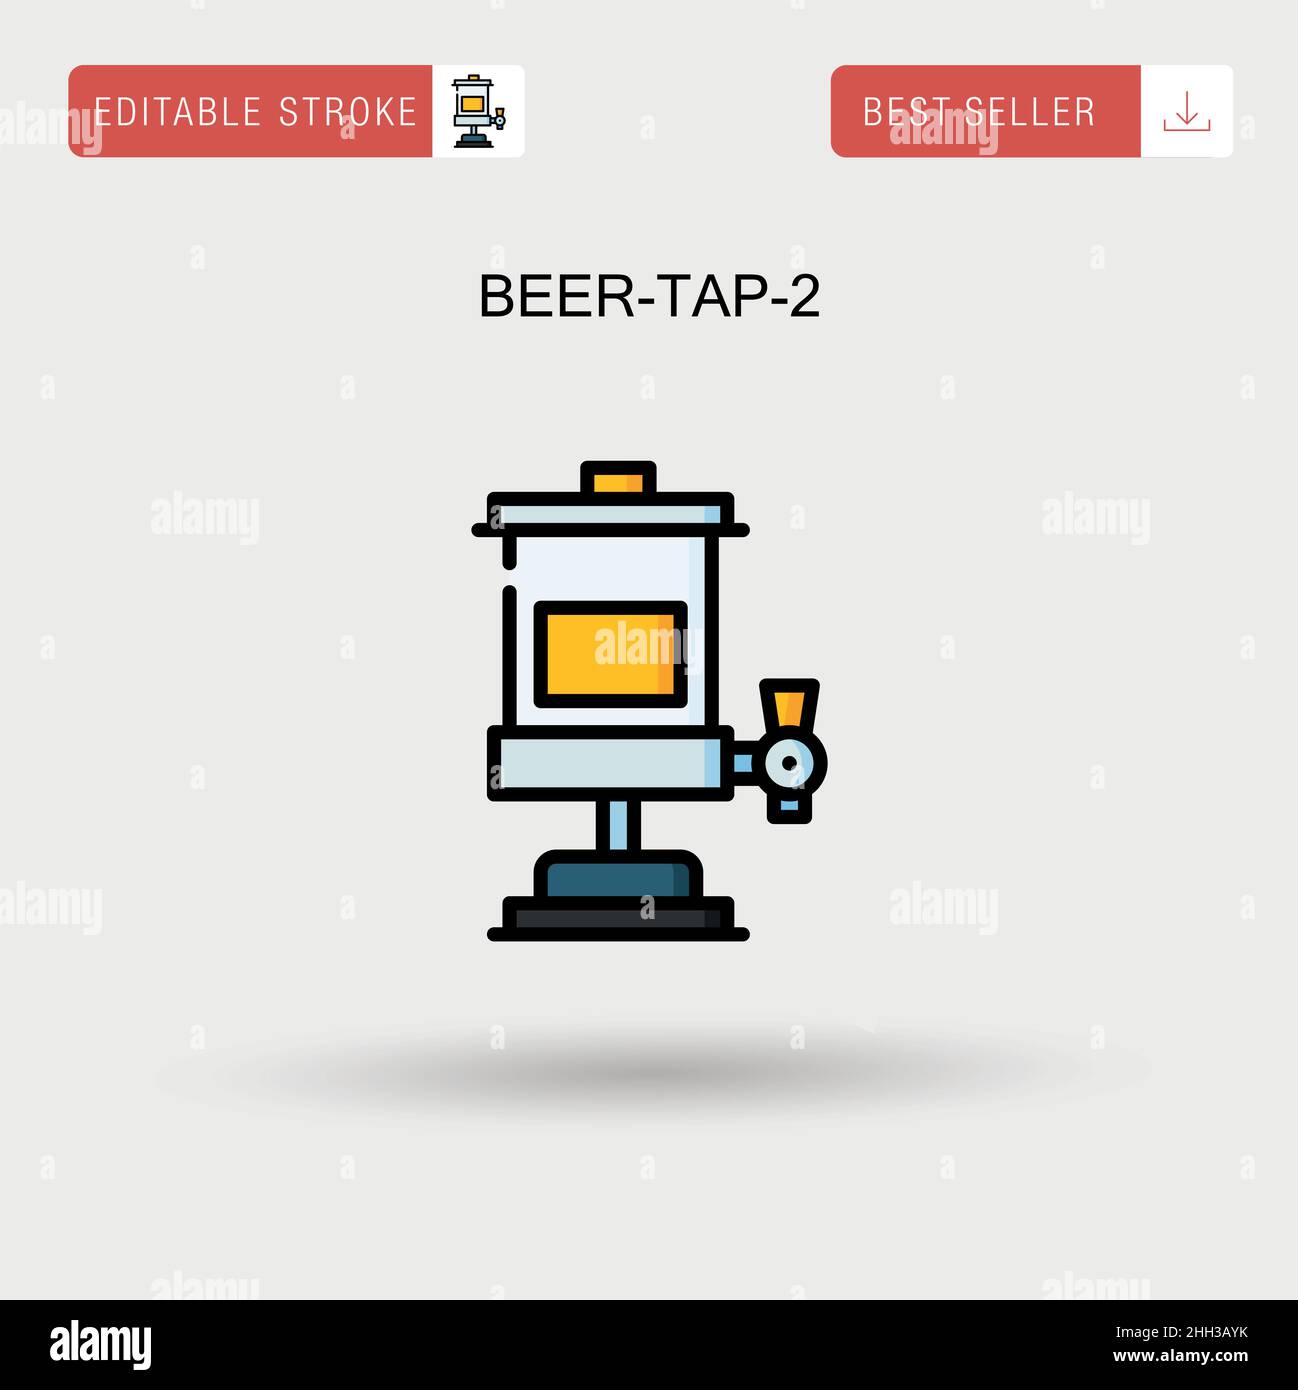 Beer-TAP-2 einfaches Vektorsymbol. Stock Vektor